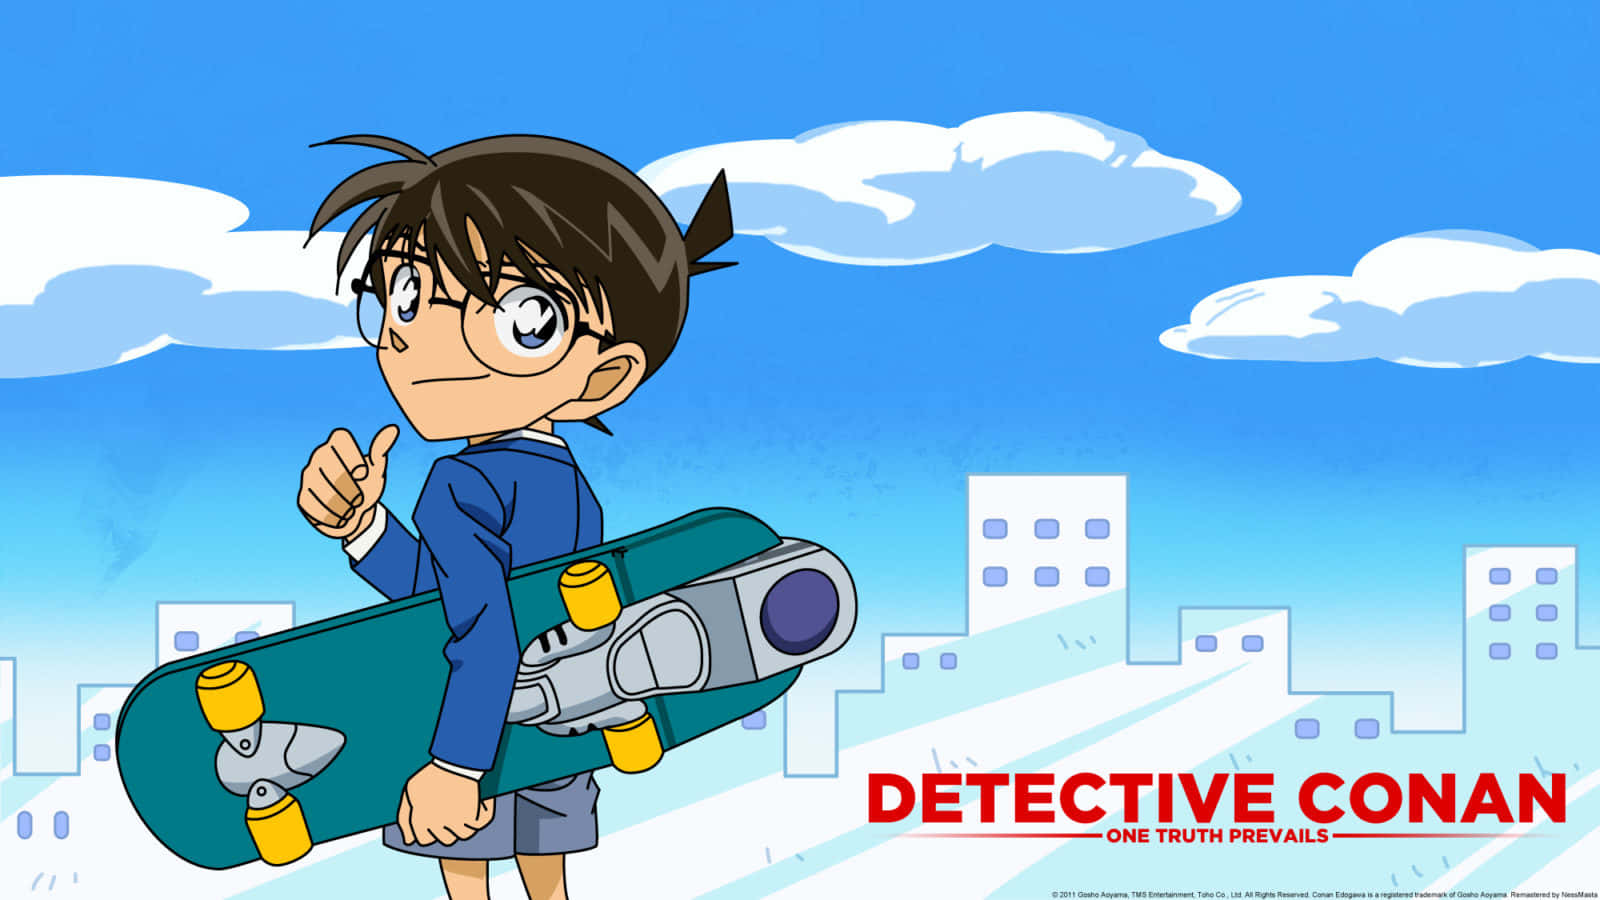 Follow detective Conan on his incredible adventure